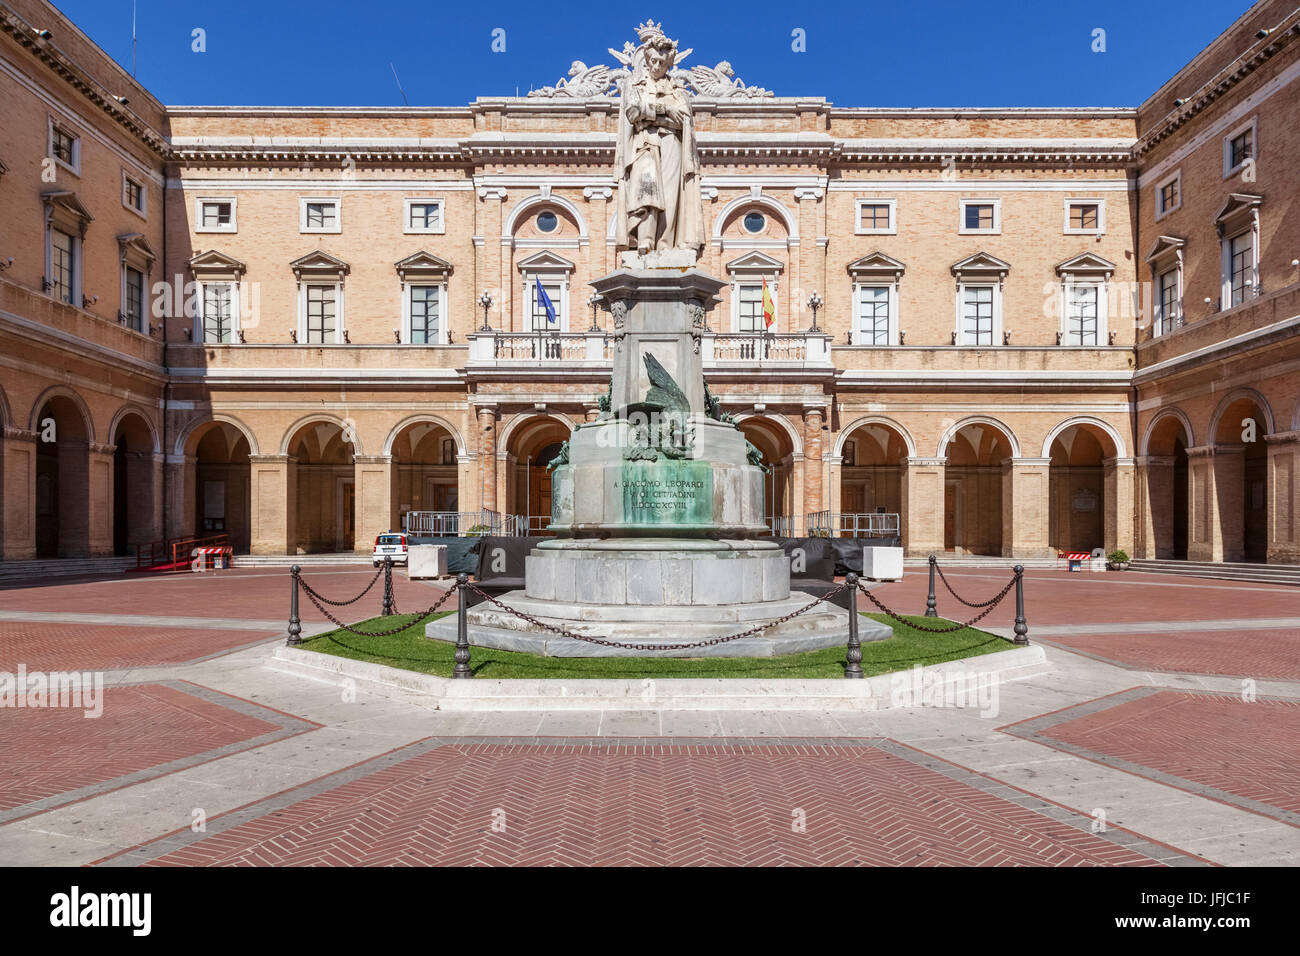 L'Europe, Italie, Marches, Macerata, Leopardi square à Recanati avec le monument du poète Giacomo Leopardi Banque D'Images